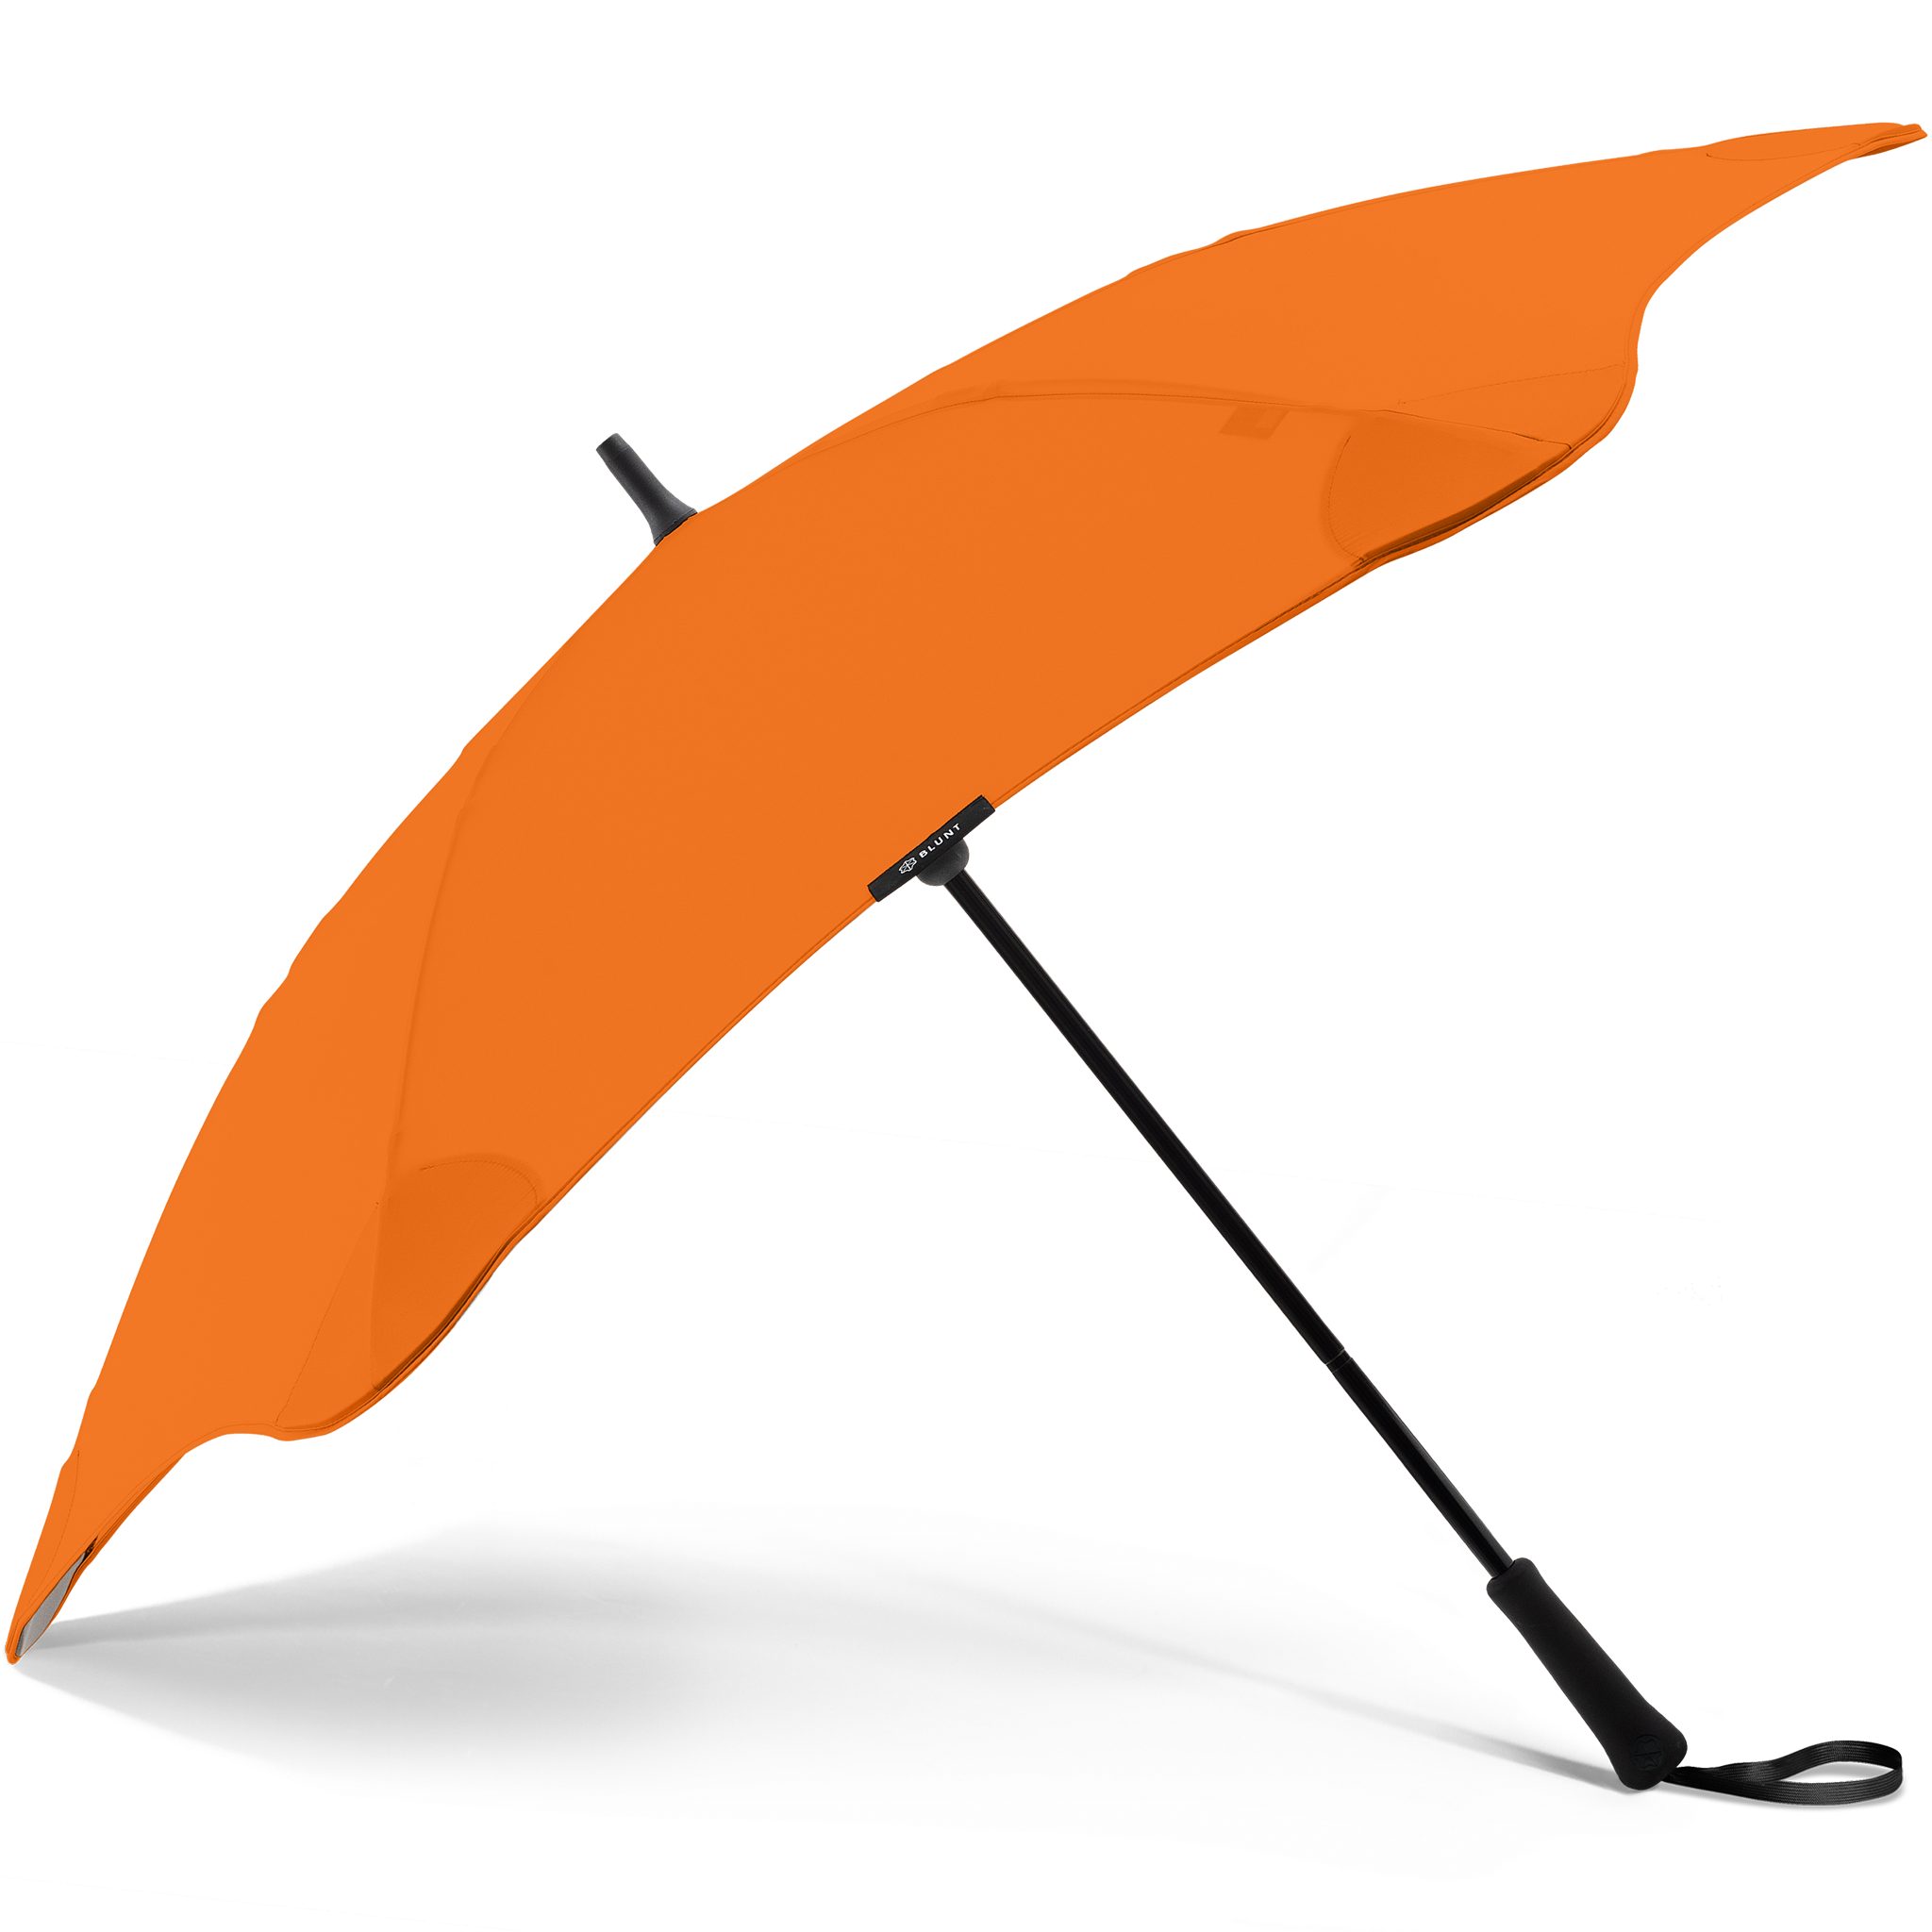 Blunt Stockregenschirm Classic, herausragende orange einzigartige Silhouette Technologie, patentierte